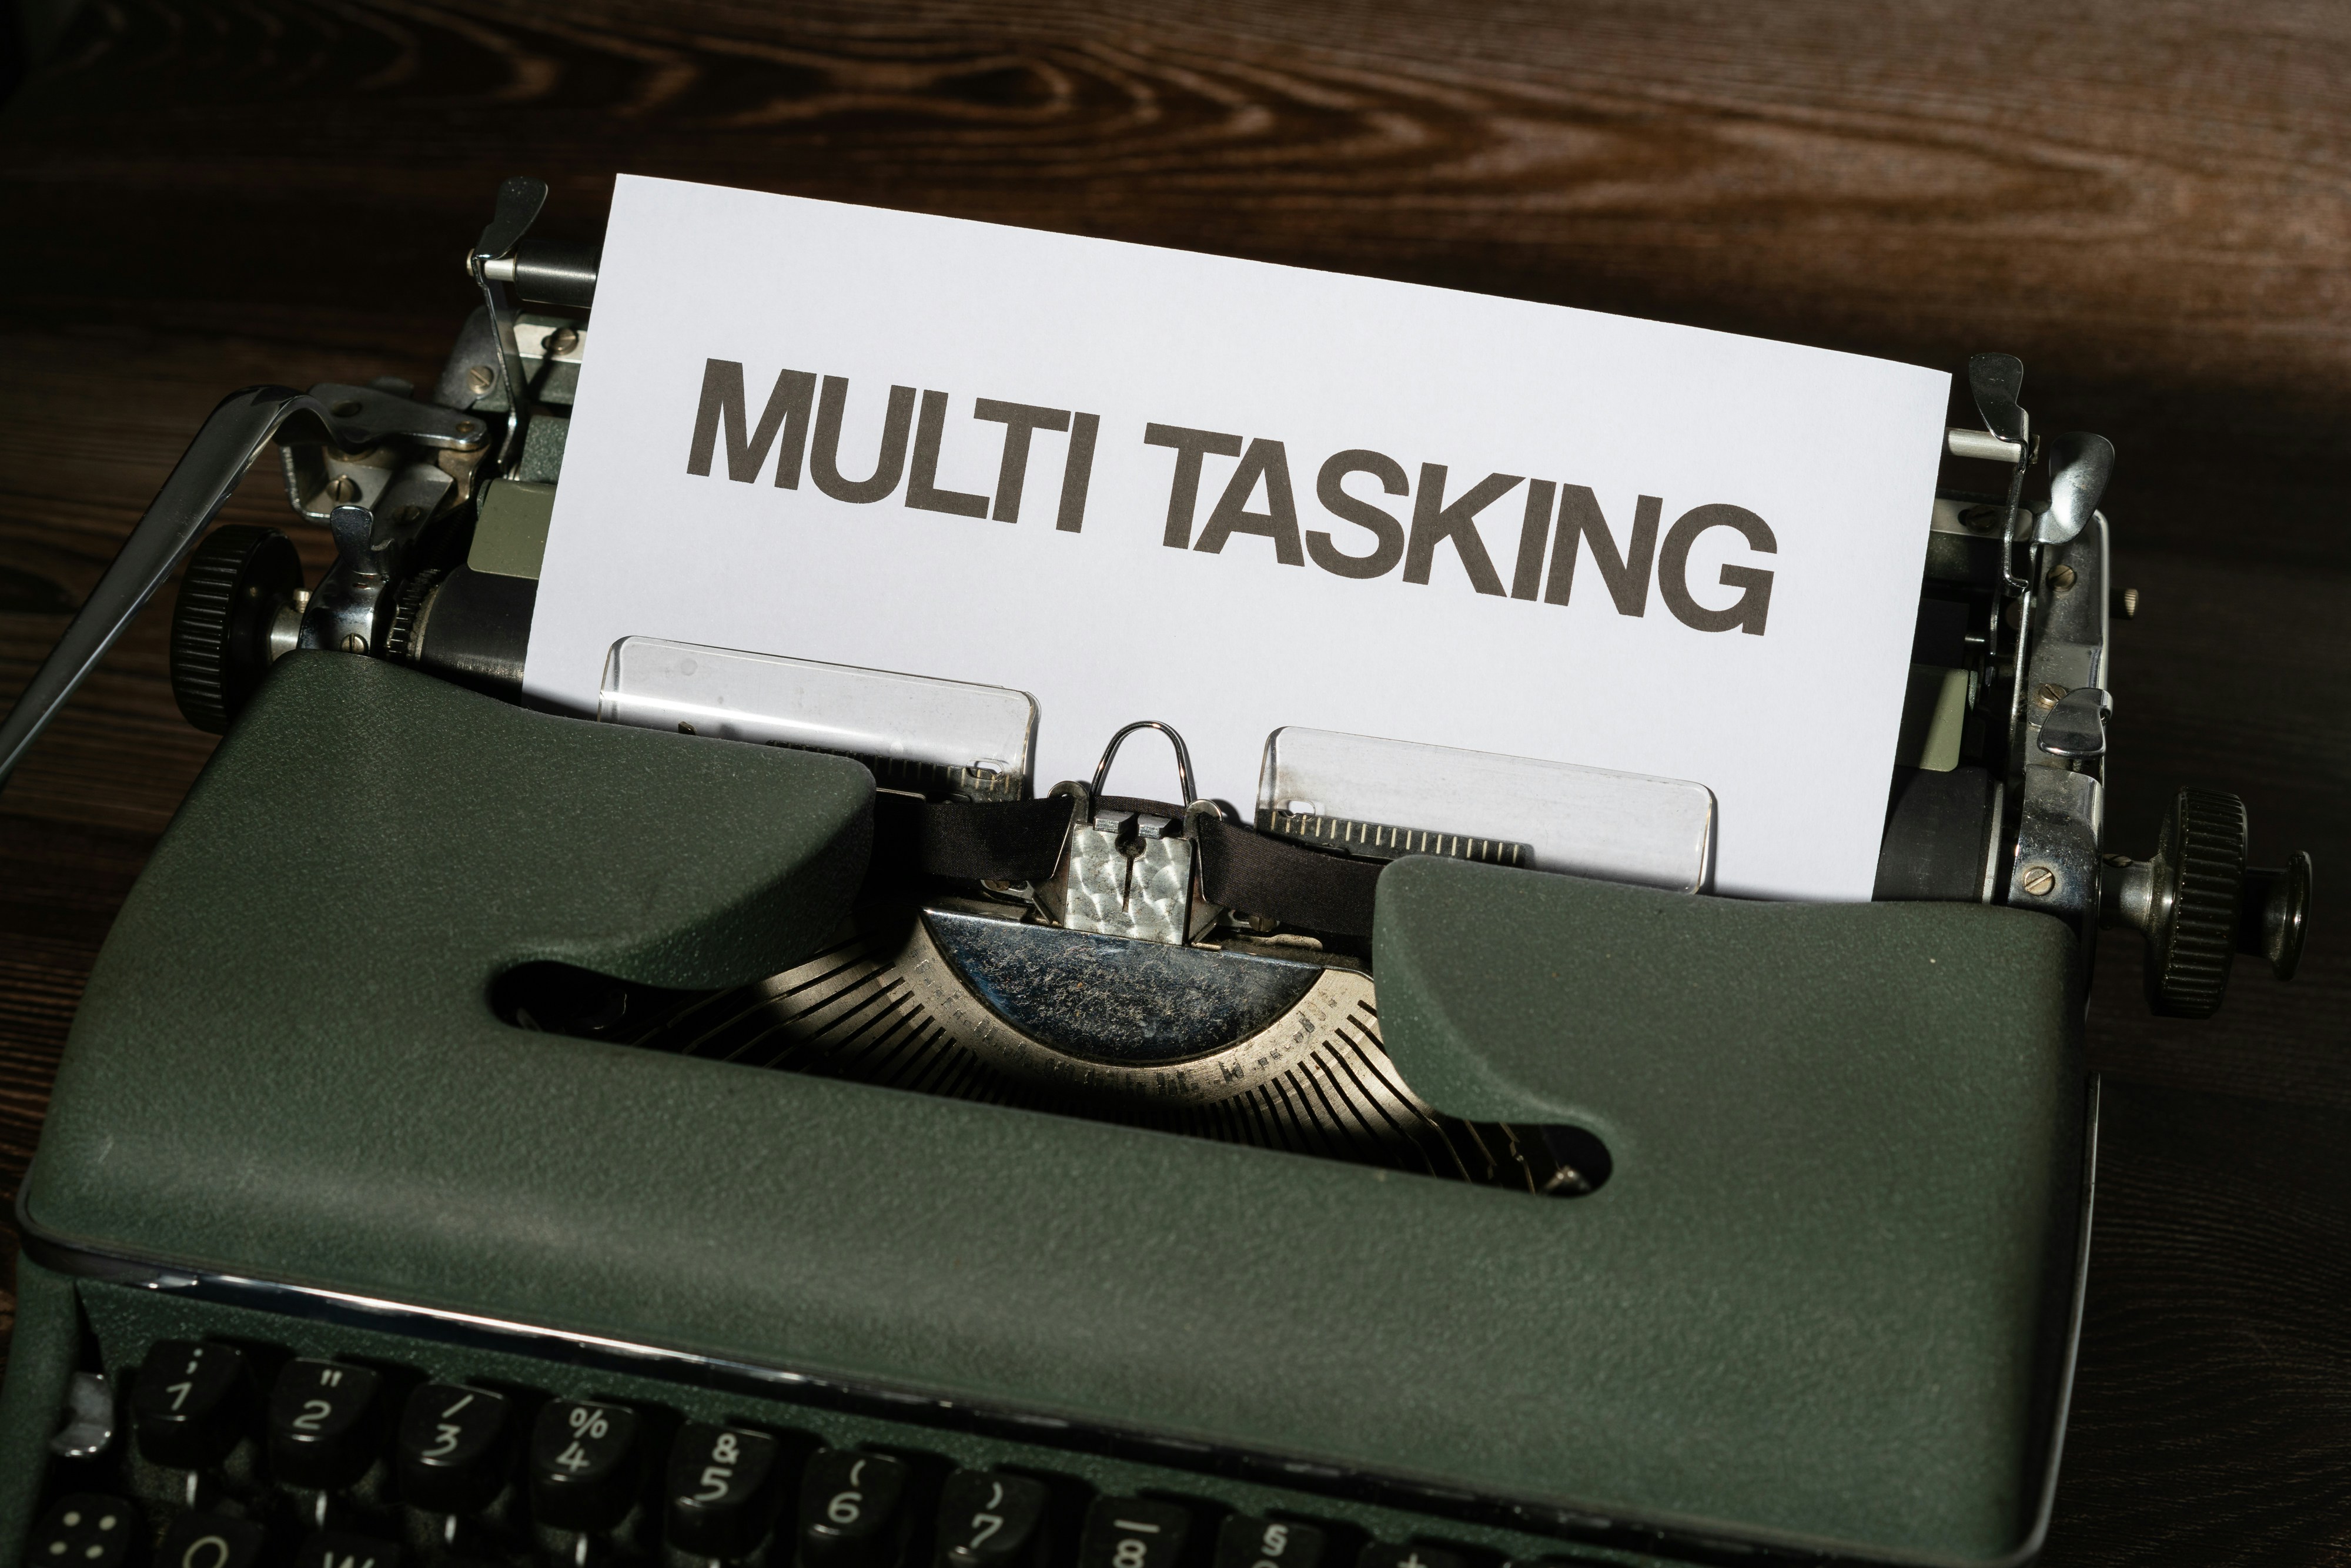 Forget Multitasking; you need to get good at Monotasking